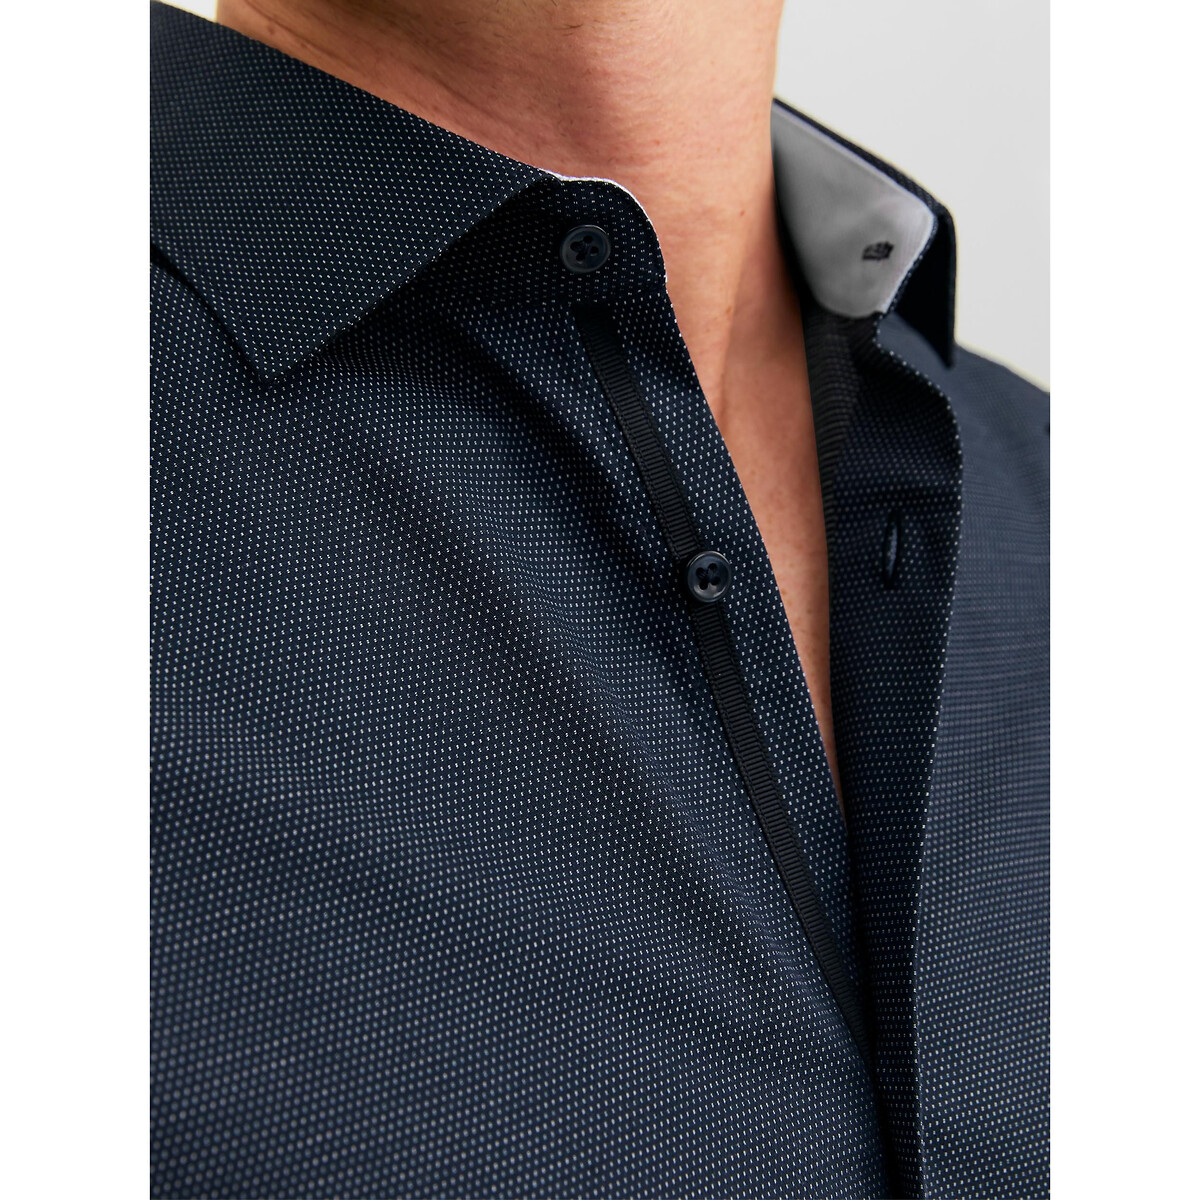 Рубашка Слим из ткани стрейч XL синий LaRedoute, размер XL - фото 3